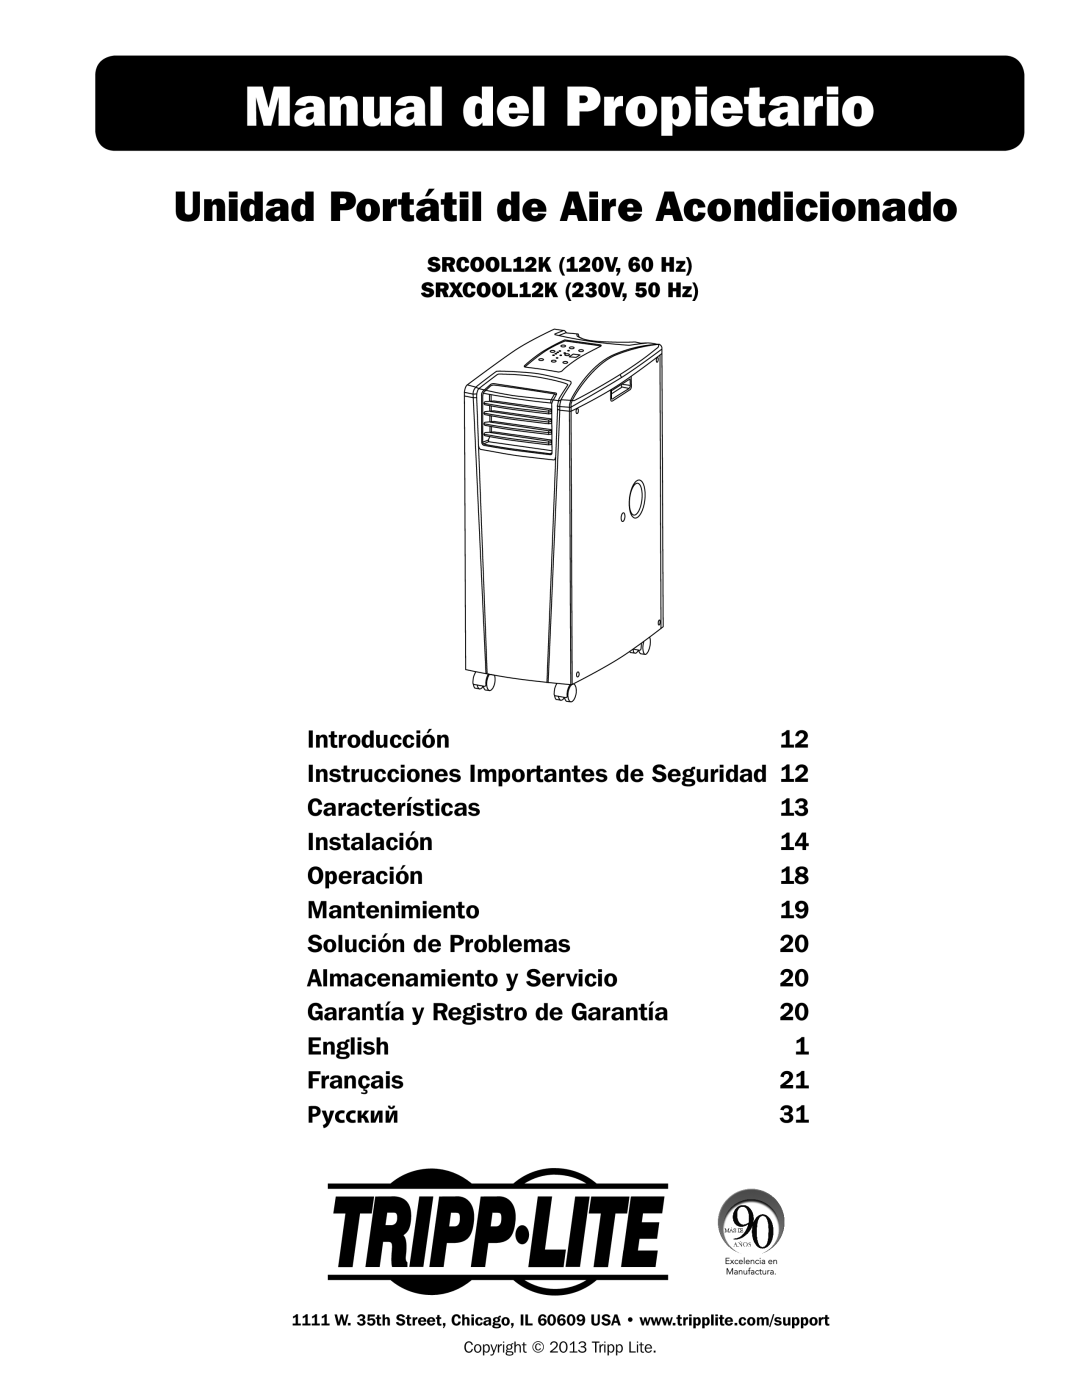 Tripp Lite SRCOOL12K, SRXCOOL12K owner manual Manual del Propietario, Unidad Portátil de Aire Acondicionado 